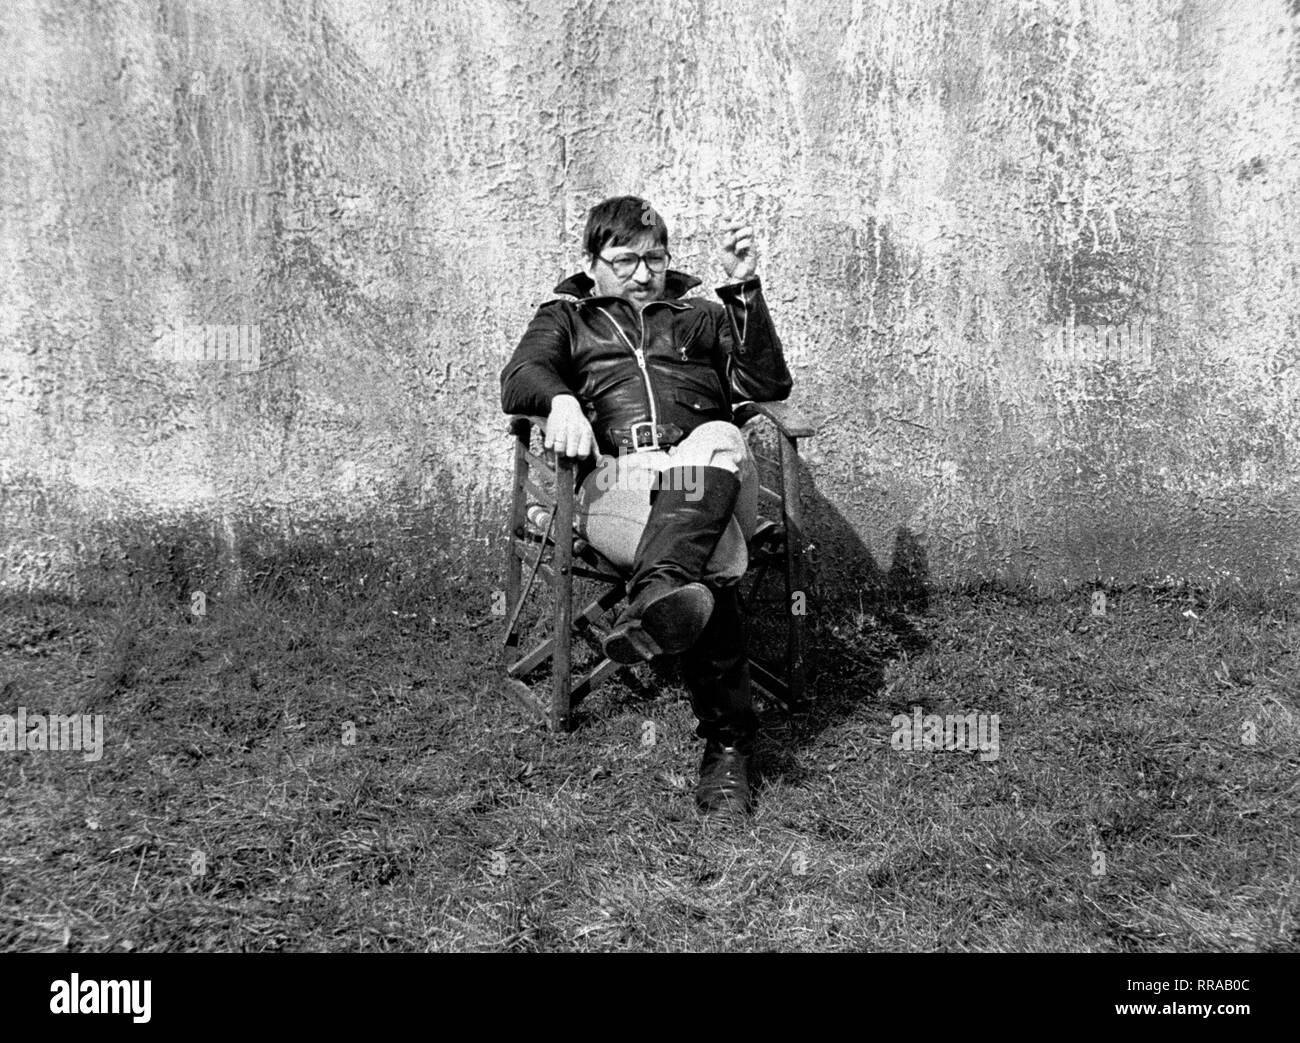 Disperazione - EINE REISE INS LICHT / D/F 1978 / Rainer Werner Fassbinder / Rainer Werner Fassbinder während der Dreharbeiten zu 'Despair', 1978. B56642 / Überschrift: DISPERAZIONE - EINE REISE INS LICHT / D/F 1978 Foto Stock